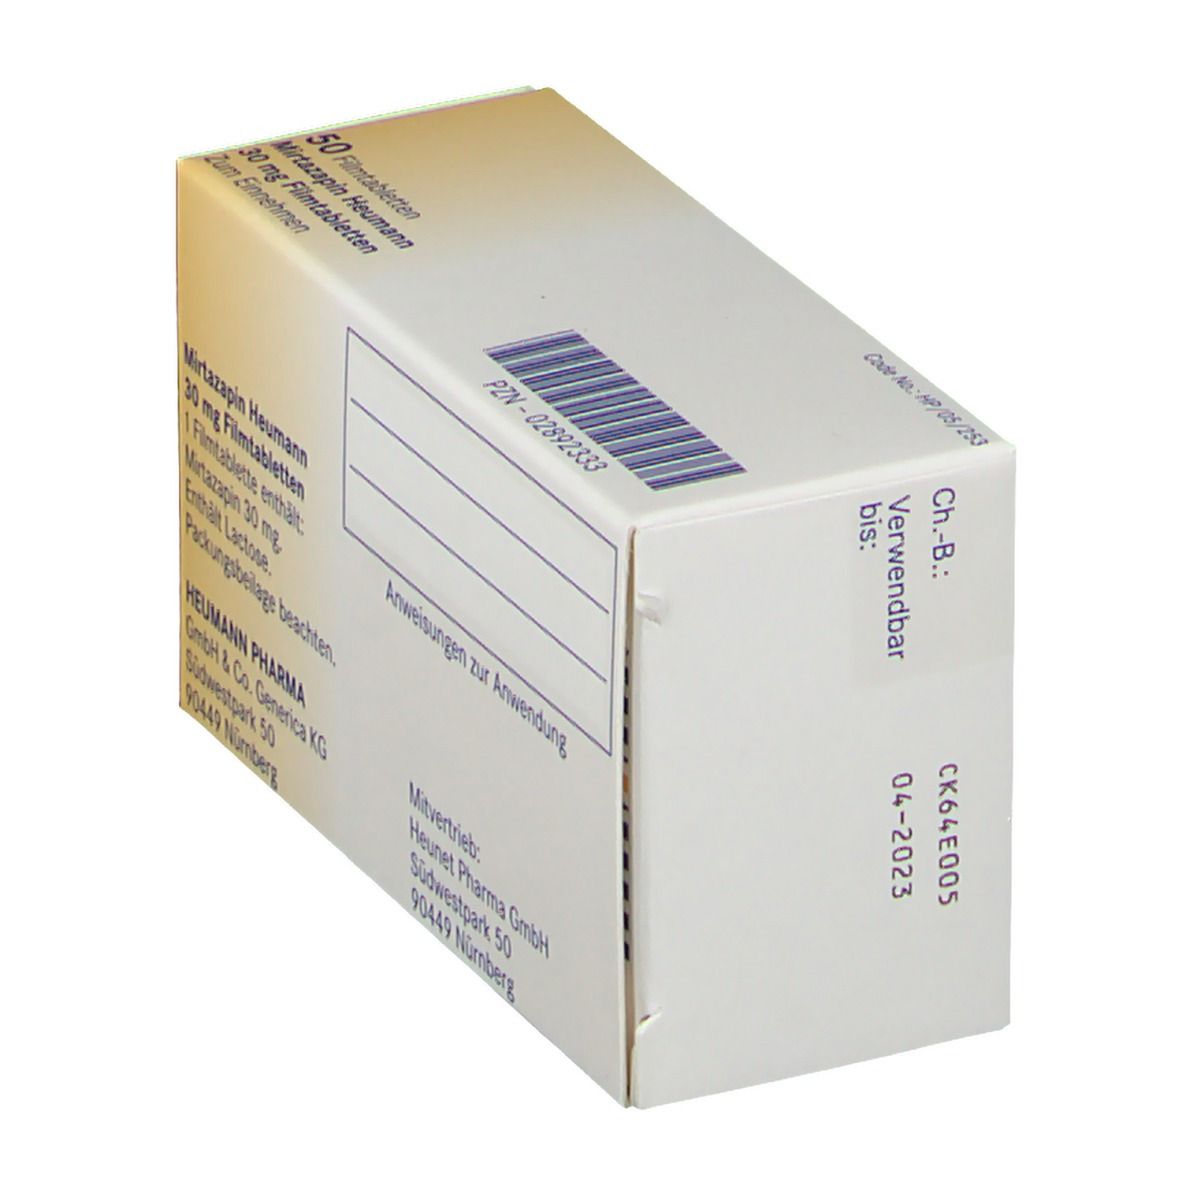 Mirtazapin Heumann 30 mg